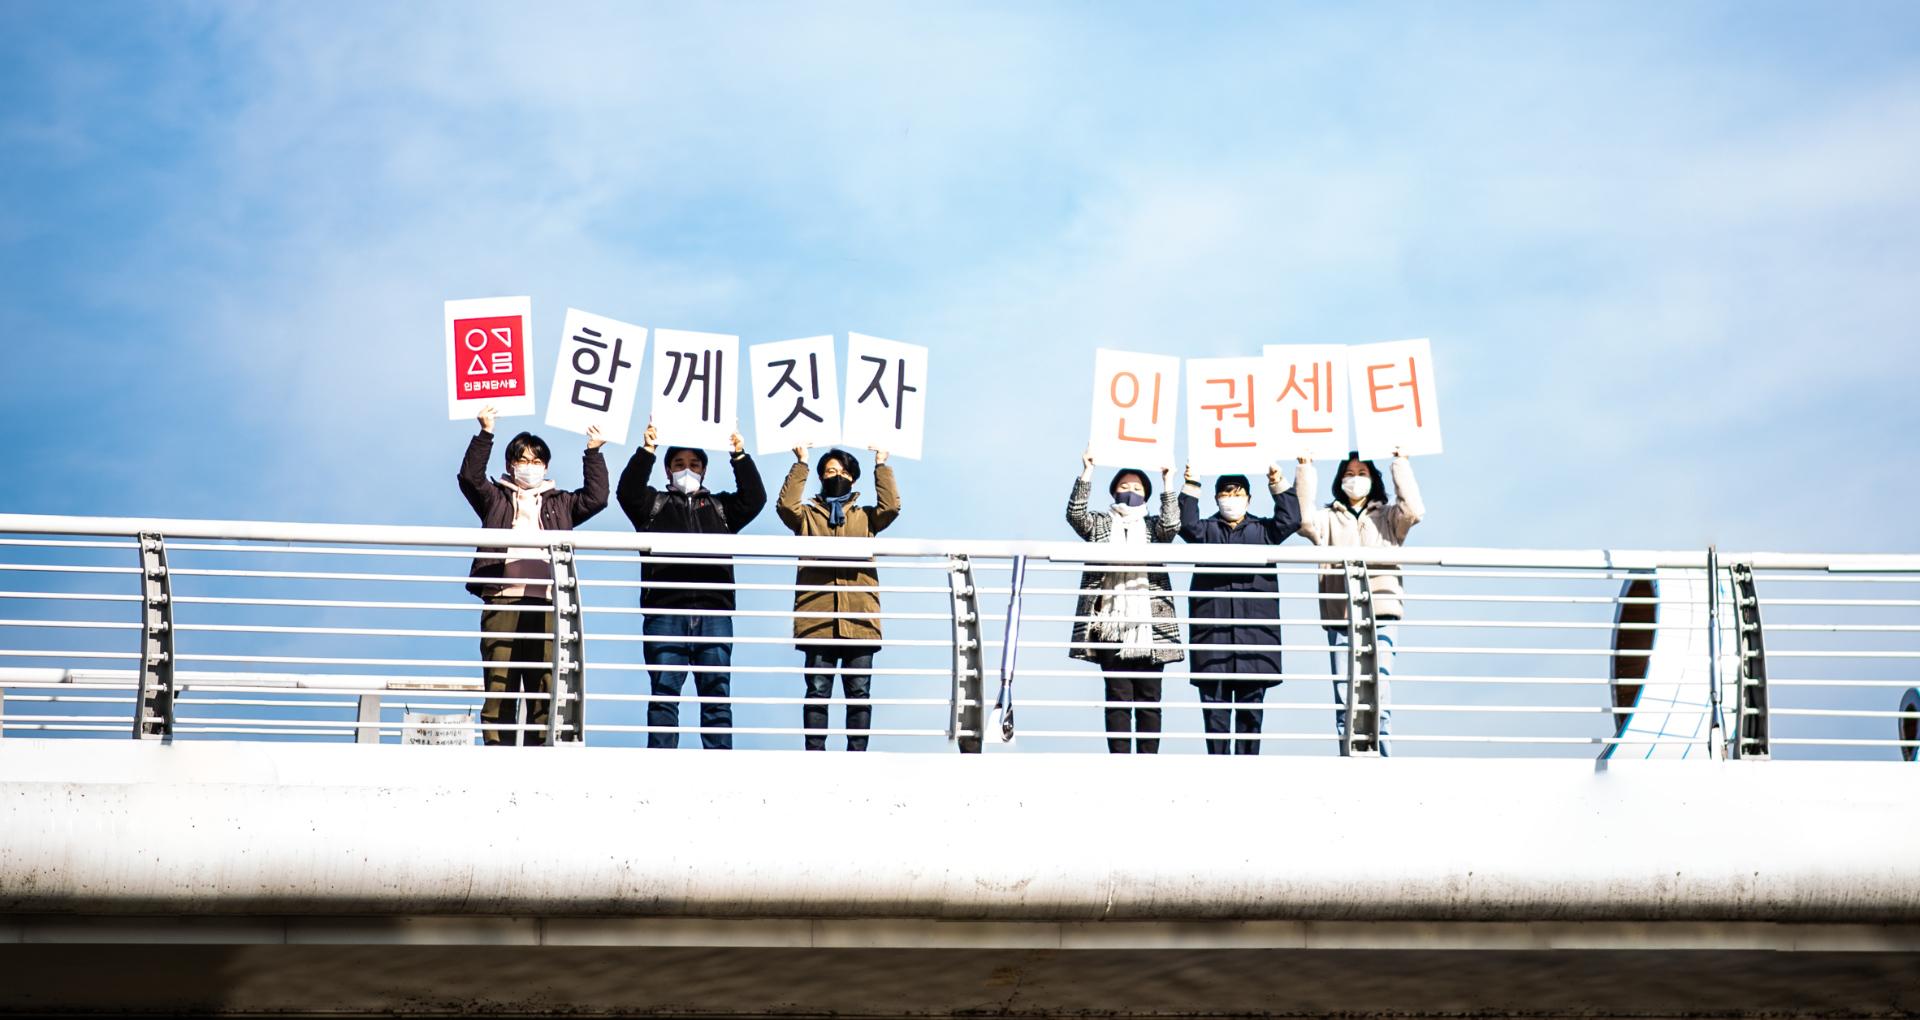 인권재단의 활동가 6명이 다리 위에서 '함께짓자 인권센터'라고 쓰인 손팻말을 들고 있다